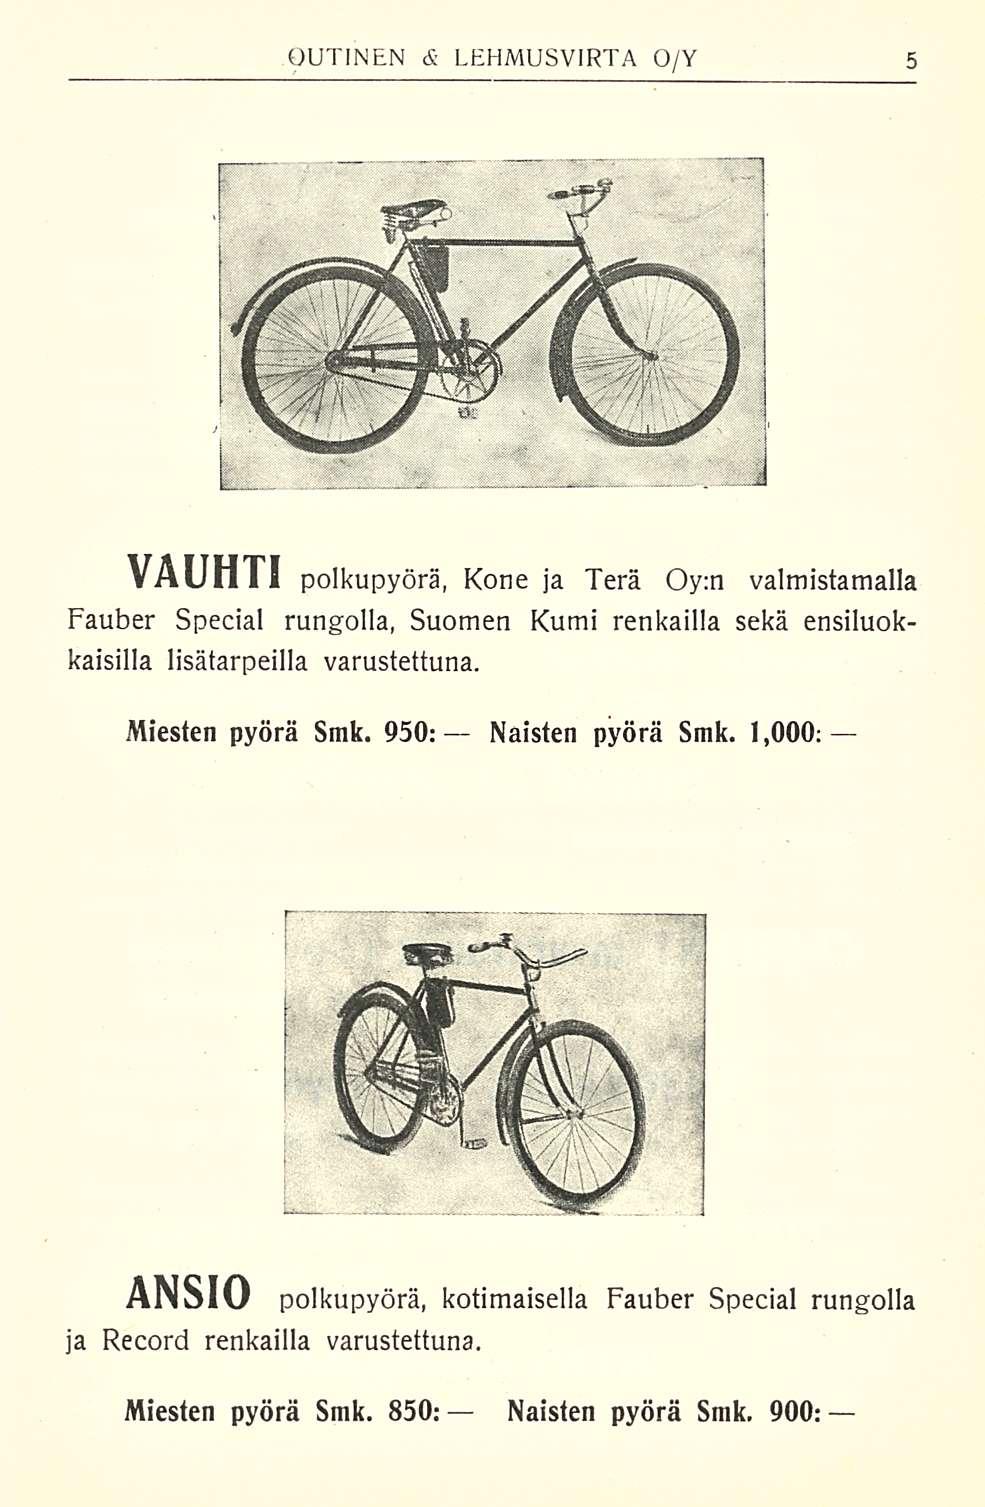 VAUHTI polkupyörä, Kone ja Terä Oy:n valmistamalla Fauber Special rungolla, Suomen Kumi renkailla sekä ensiluokkaisilla lisätarpeilla varustettuna. Miesten pyörä Smk.